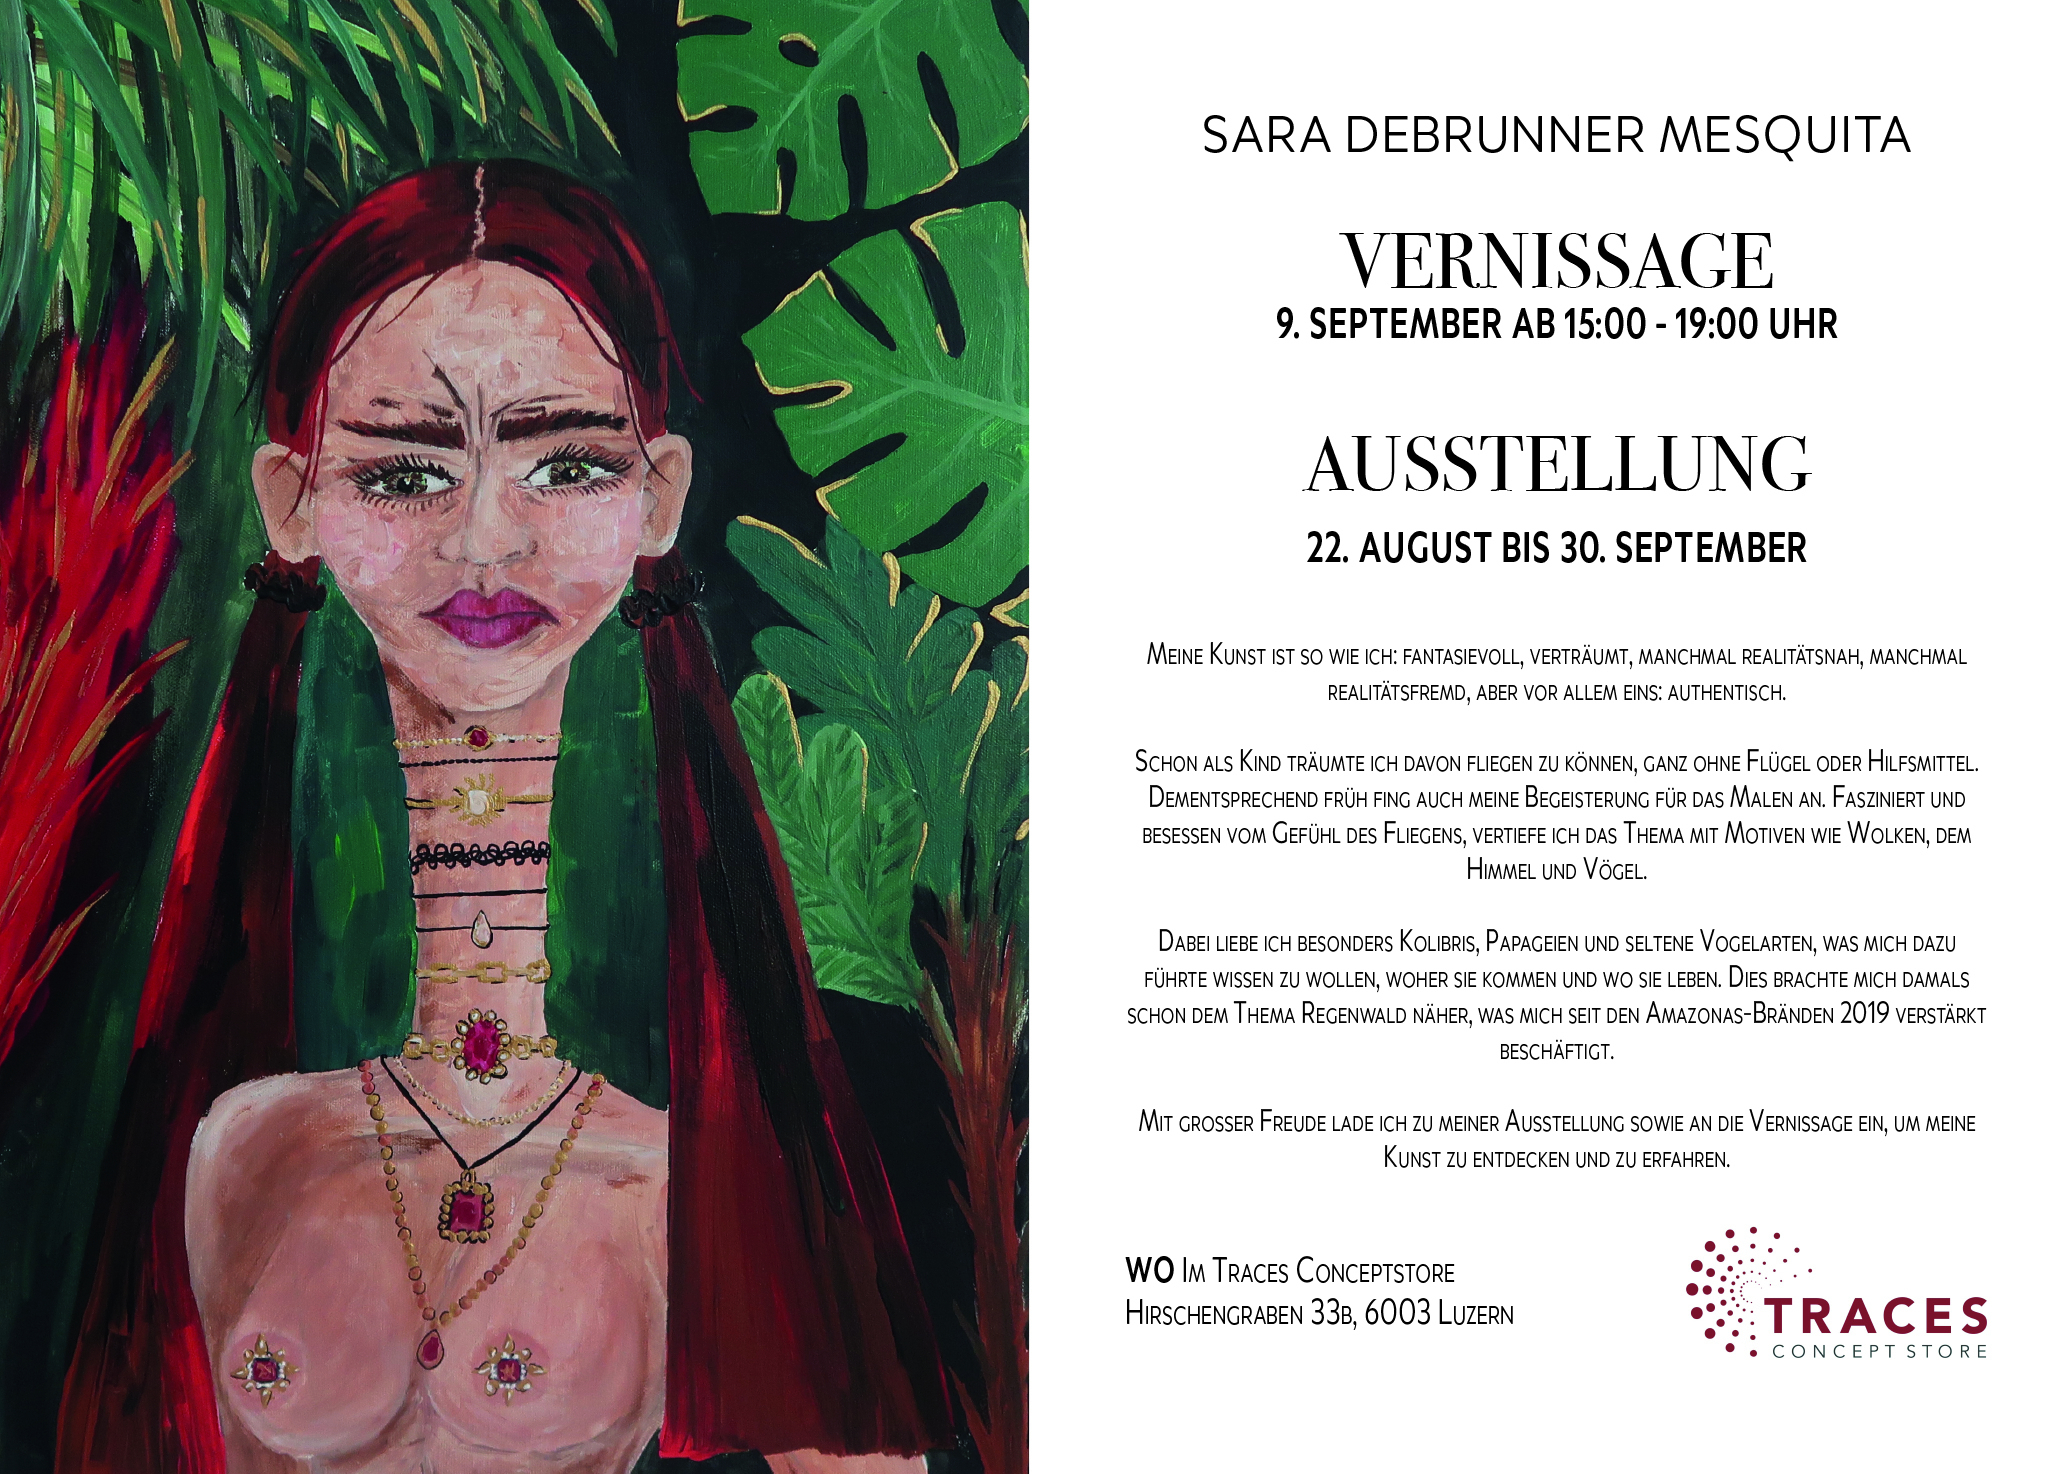 Ausstellung Vernissage Sara Debrunner Mesquita